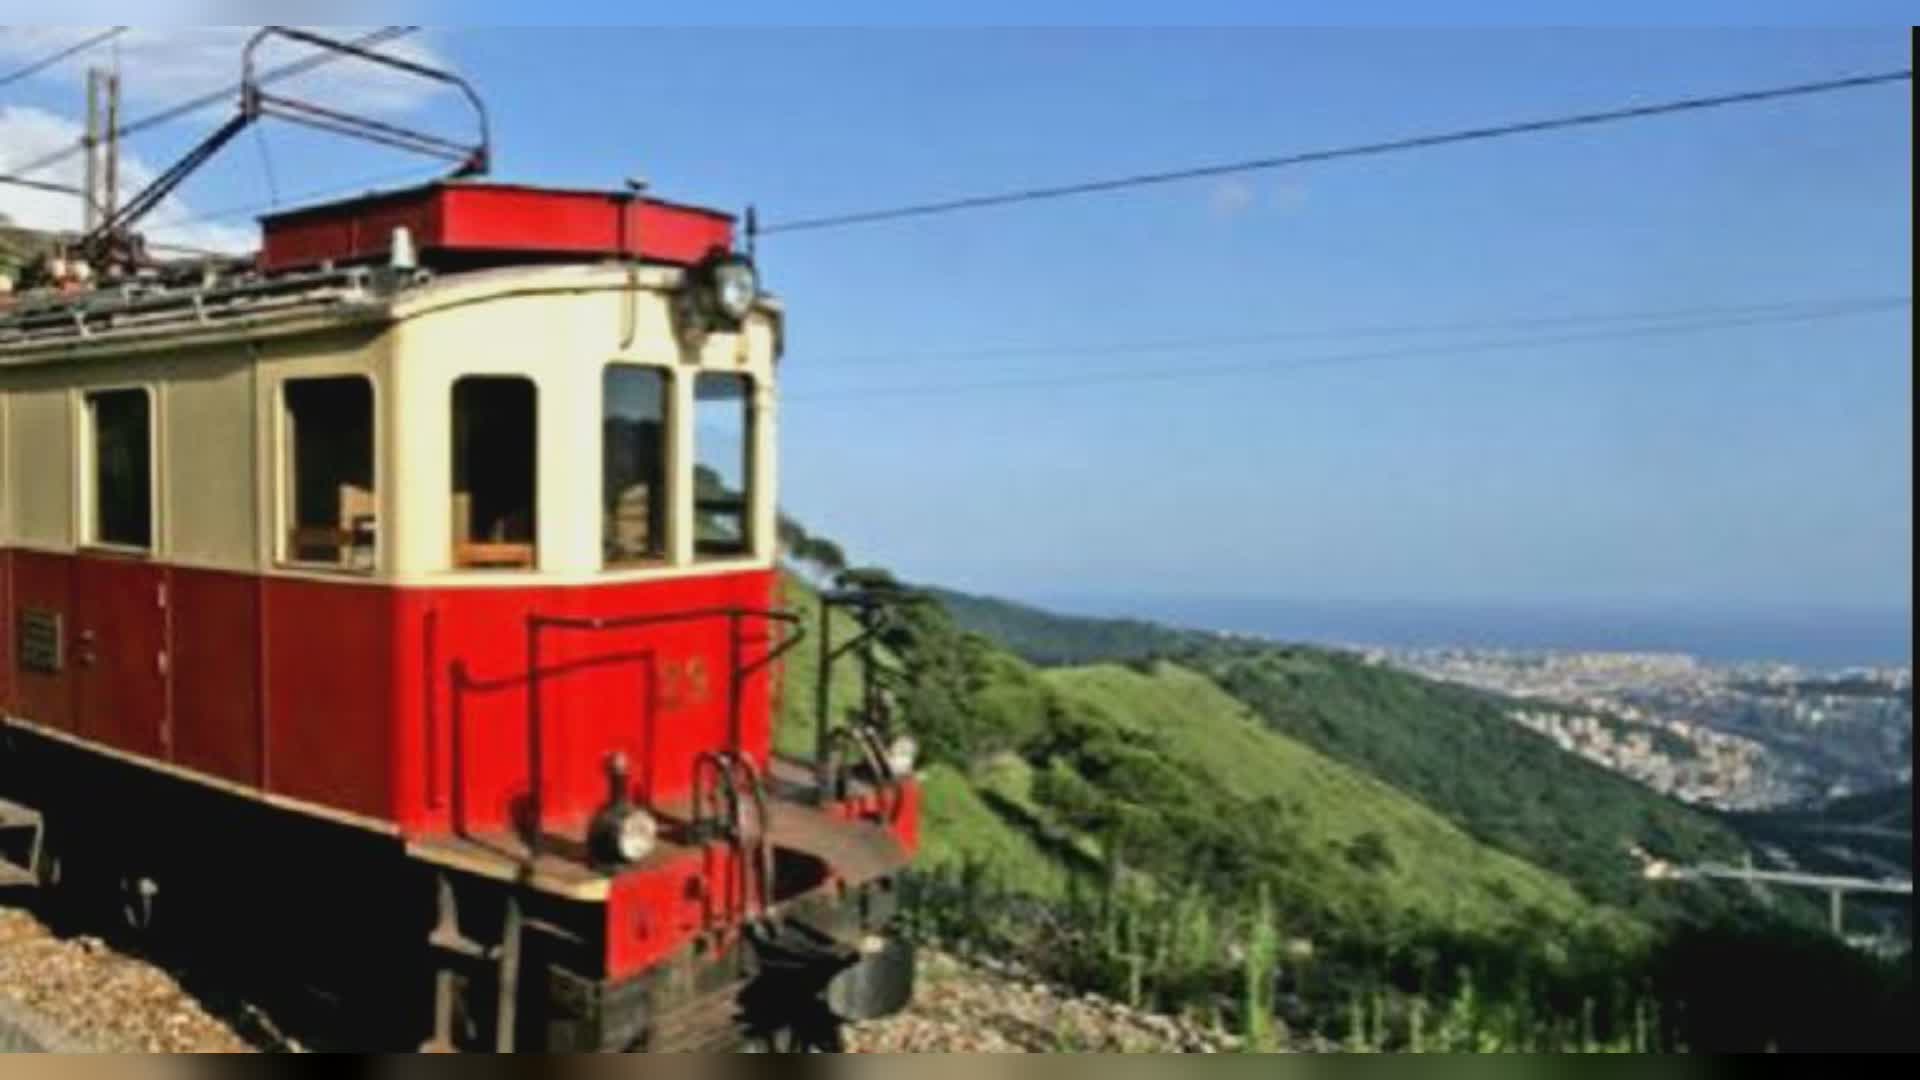 Maltempo: trenino Genova-Casella sospeso per verifiche sul percorso dopo le forti piogge